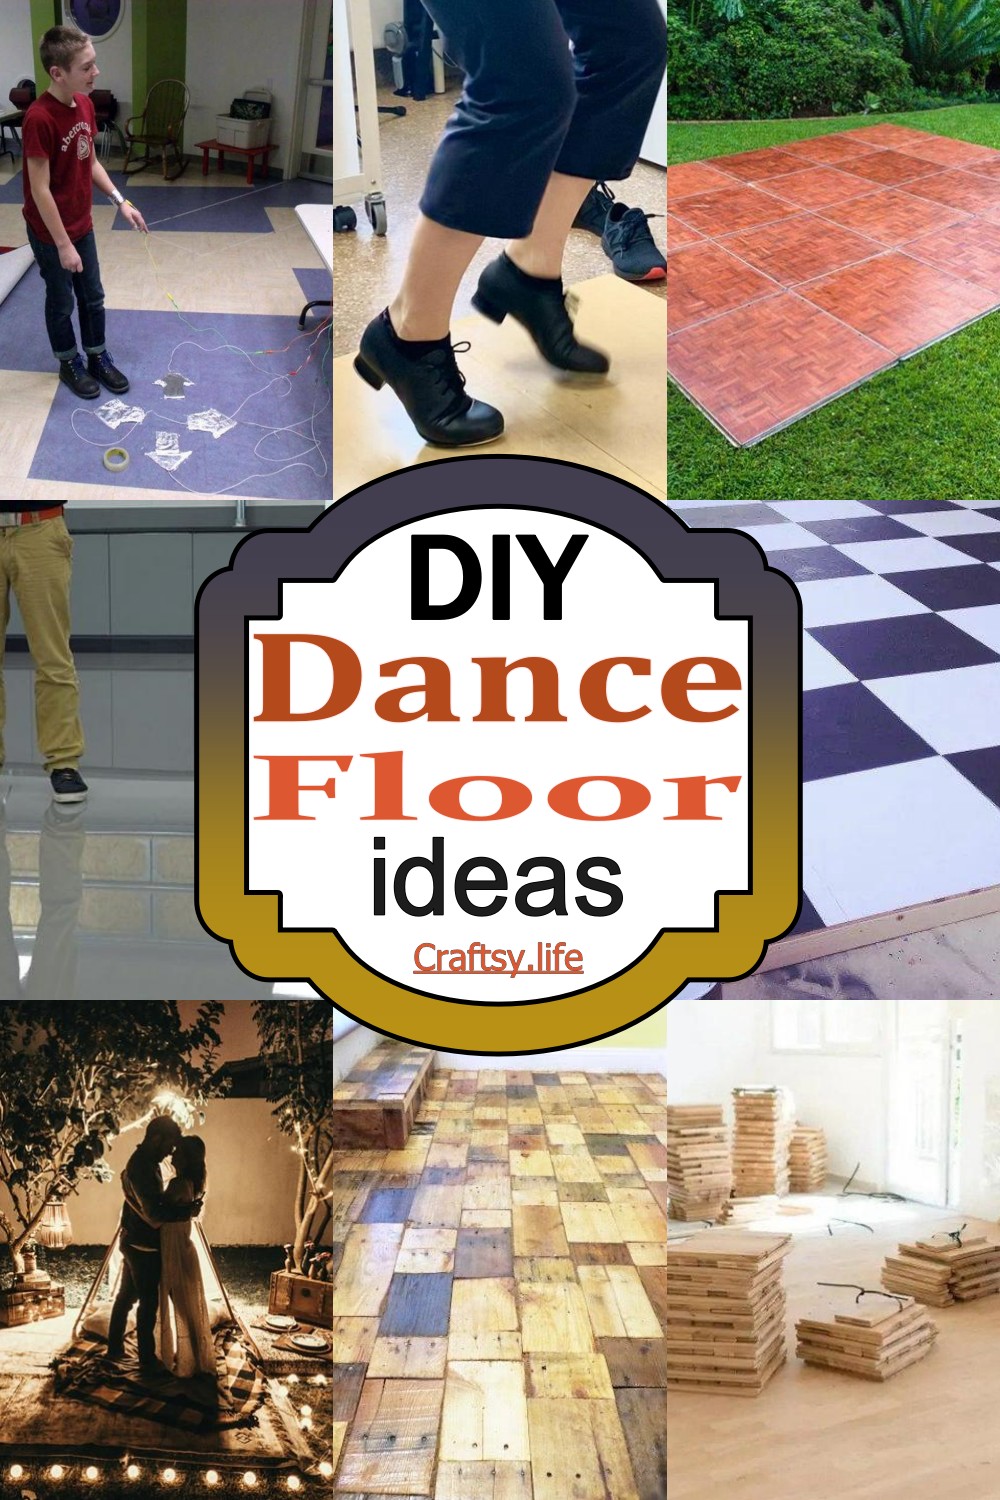 Dance Floor Ideas